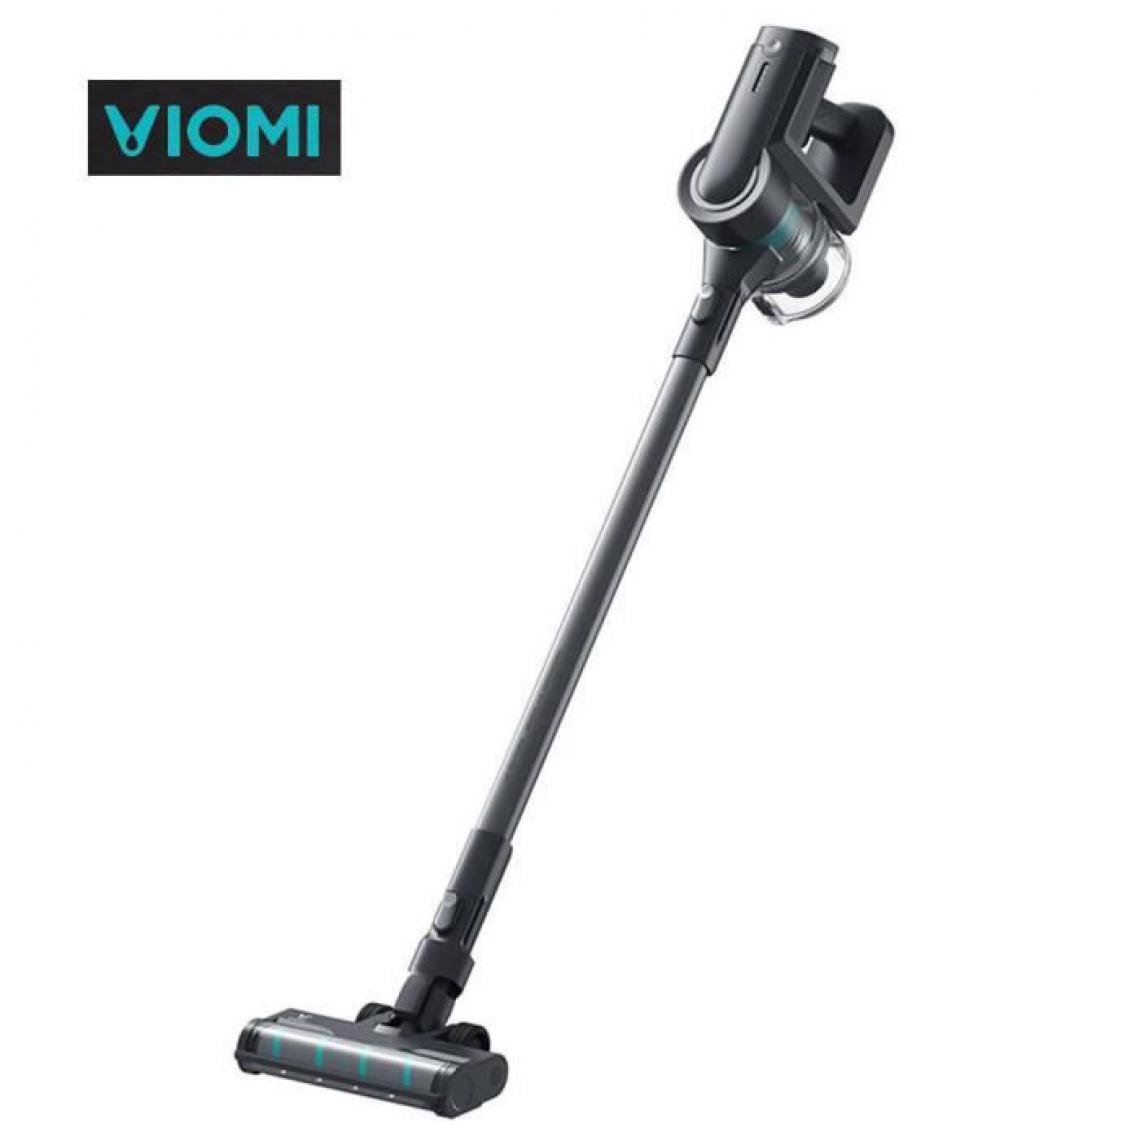 Viomi - VIOMI A9 Aspirateur Balai 400 w 23KPa collecteur de poussière de tapis de sol portable sans fil - Aspirateur balai